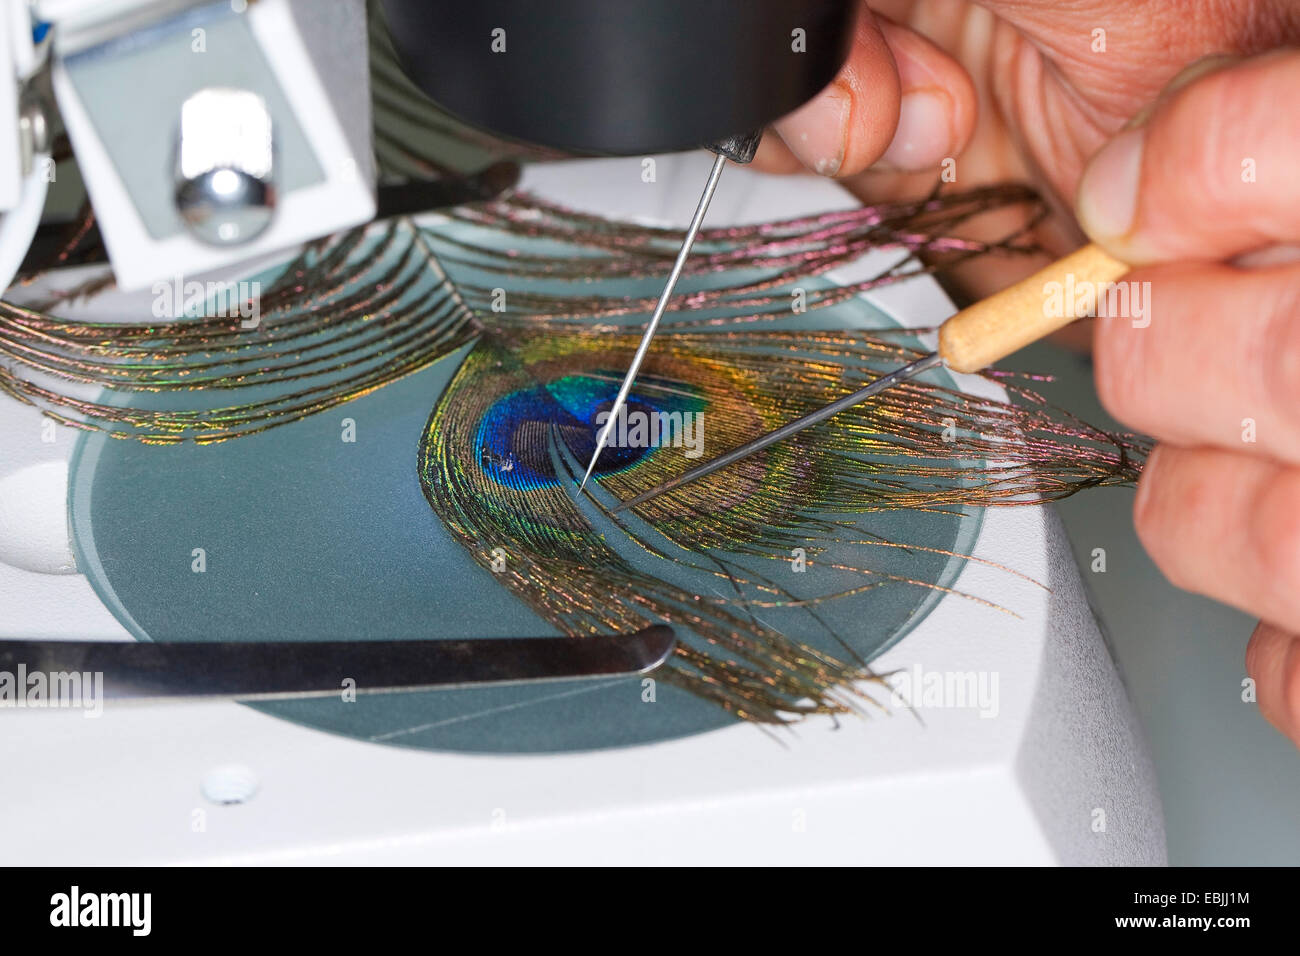 Pavo cristatus common (paons), Barb exposés d'une plume de paon pour la recherche et de barbules crochets avec des jumelles Banque D'Images